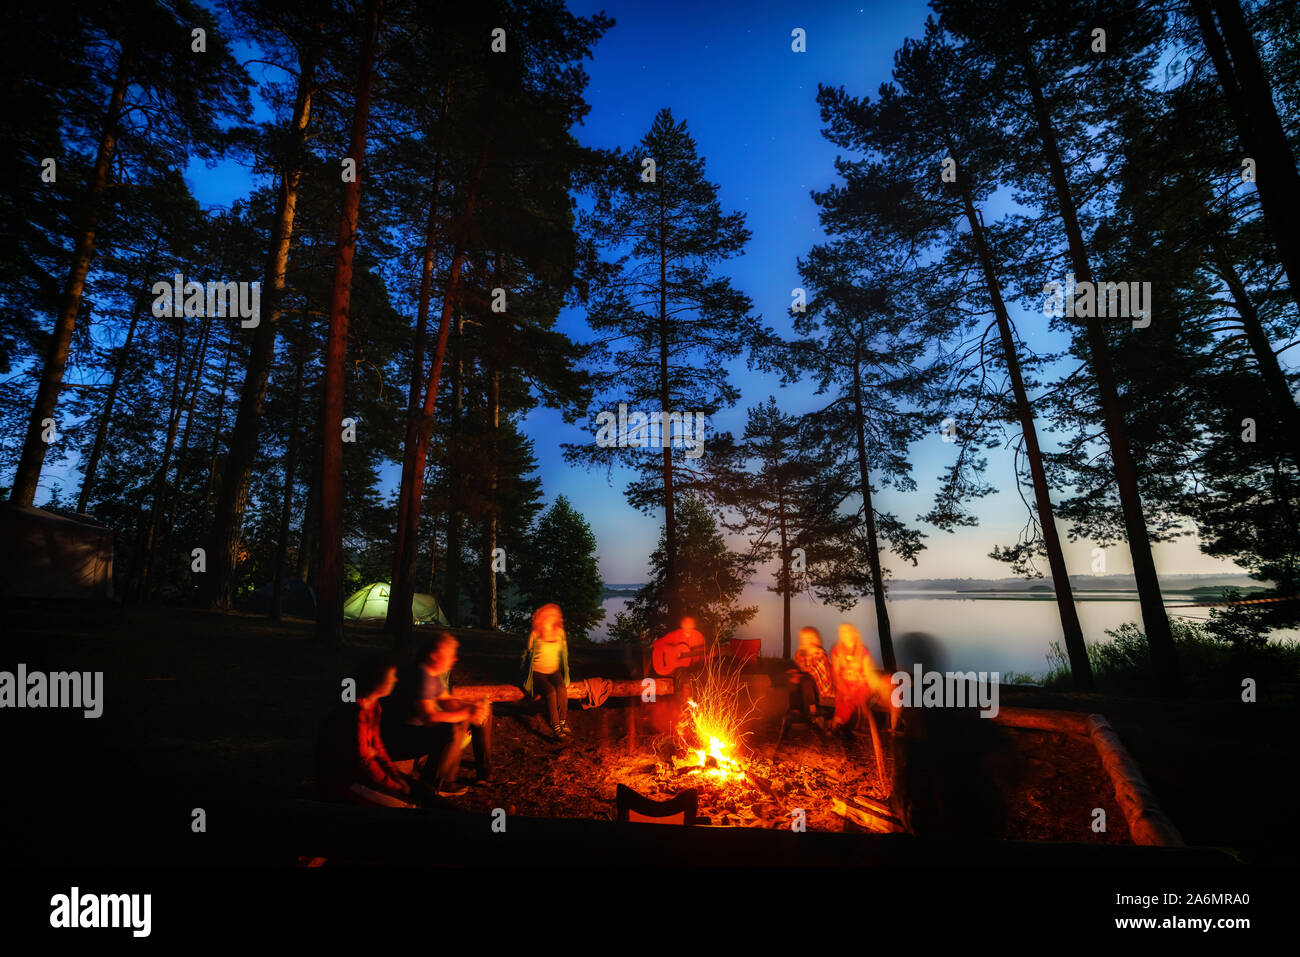 Freunde in Wald in der Nähe von Feuer auf einem Campingplatz. Gruppe von Menschen unter dem Nachthimmel mit Sternen genießen Sie Natur Urlaub am Campingplatz. Stockfoto